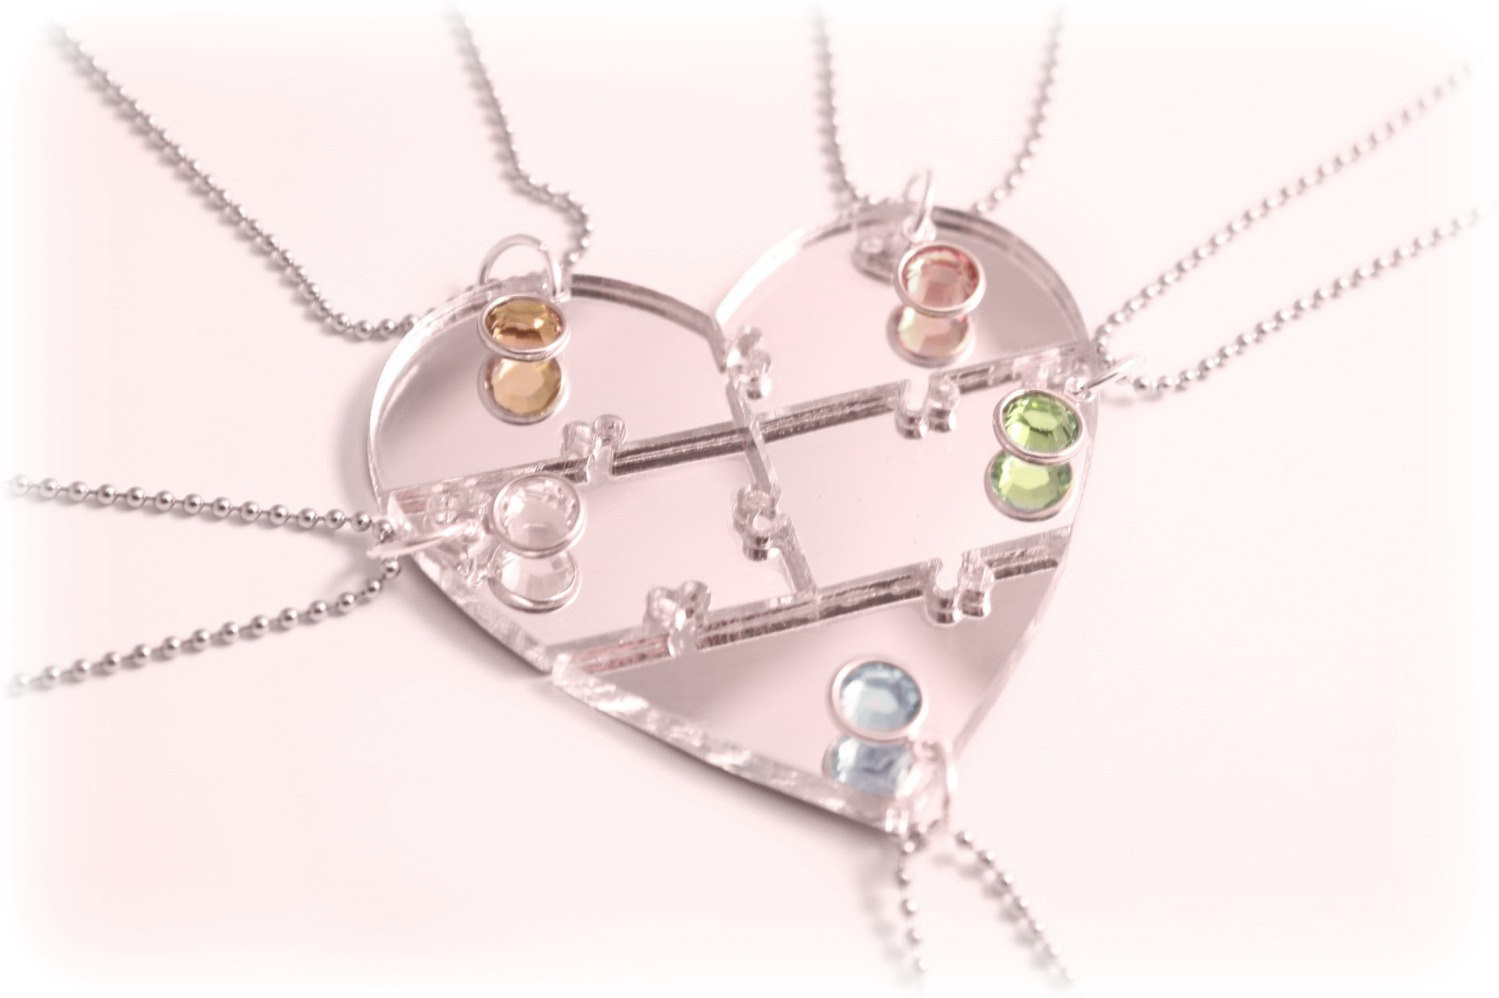 5 Piece Friendship Necklace
 Best Friends 5 Piece Puzzle Heart Necklace by